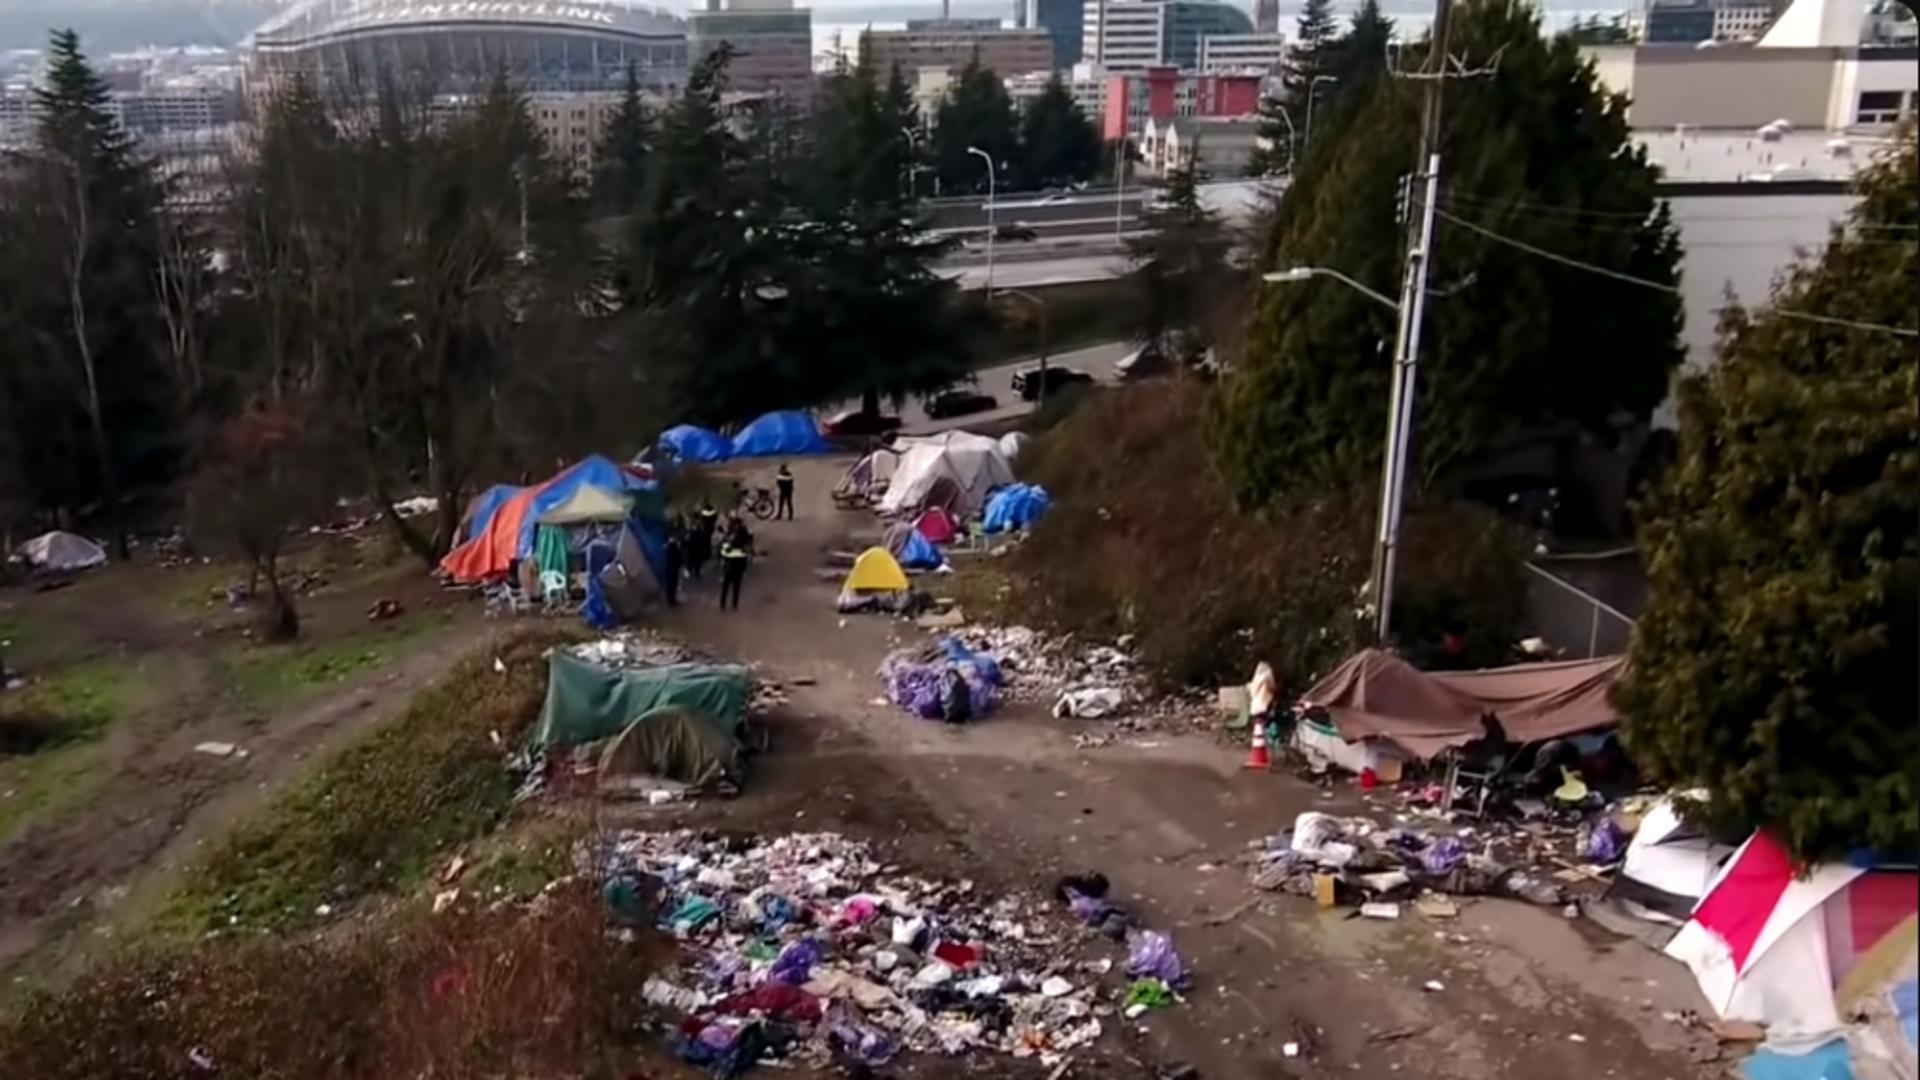 Au oferit droguri gratuite drogaților, iar acum străzile sunt sufocate de oameni fără adăpost și criminalitate. Foto: Captură YouTube